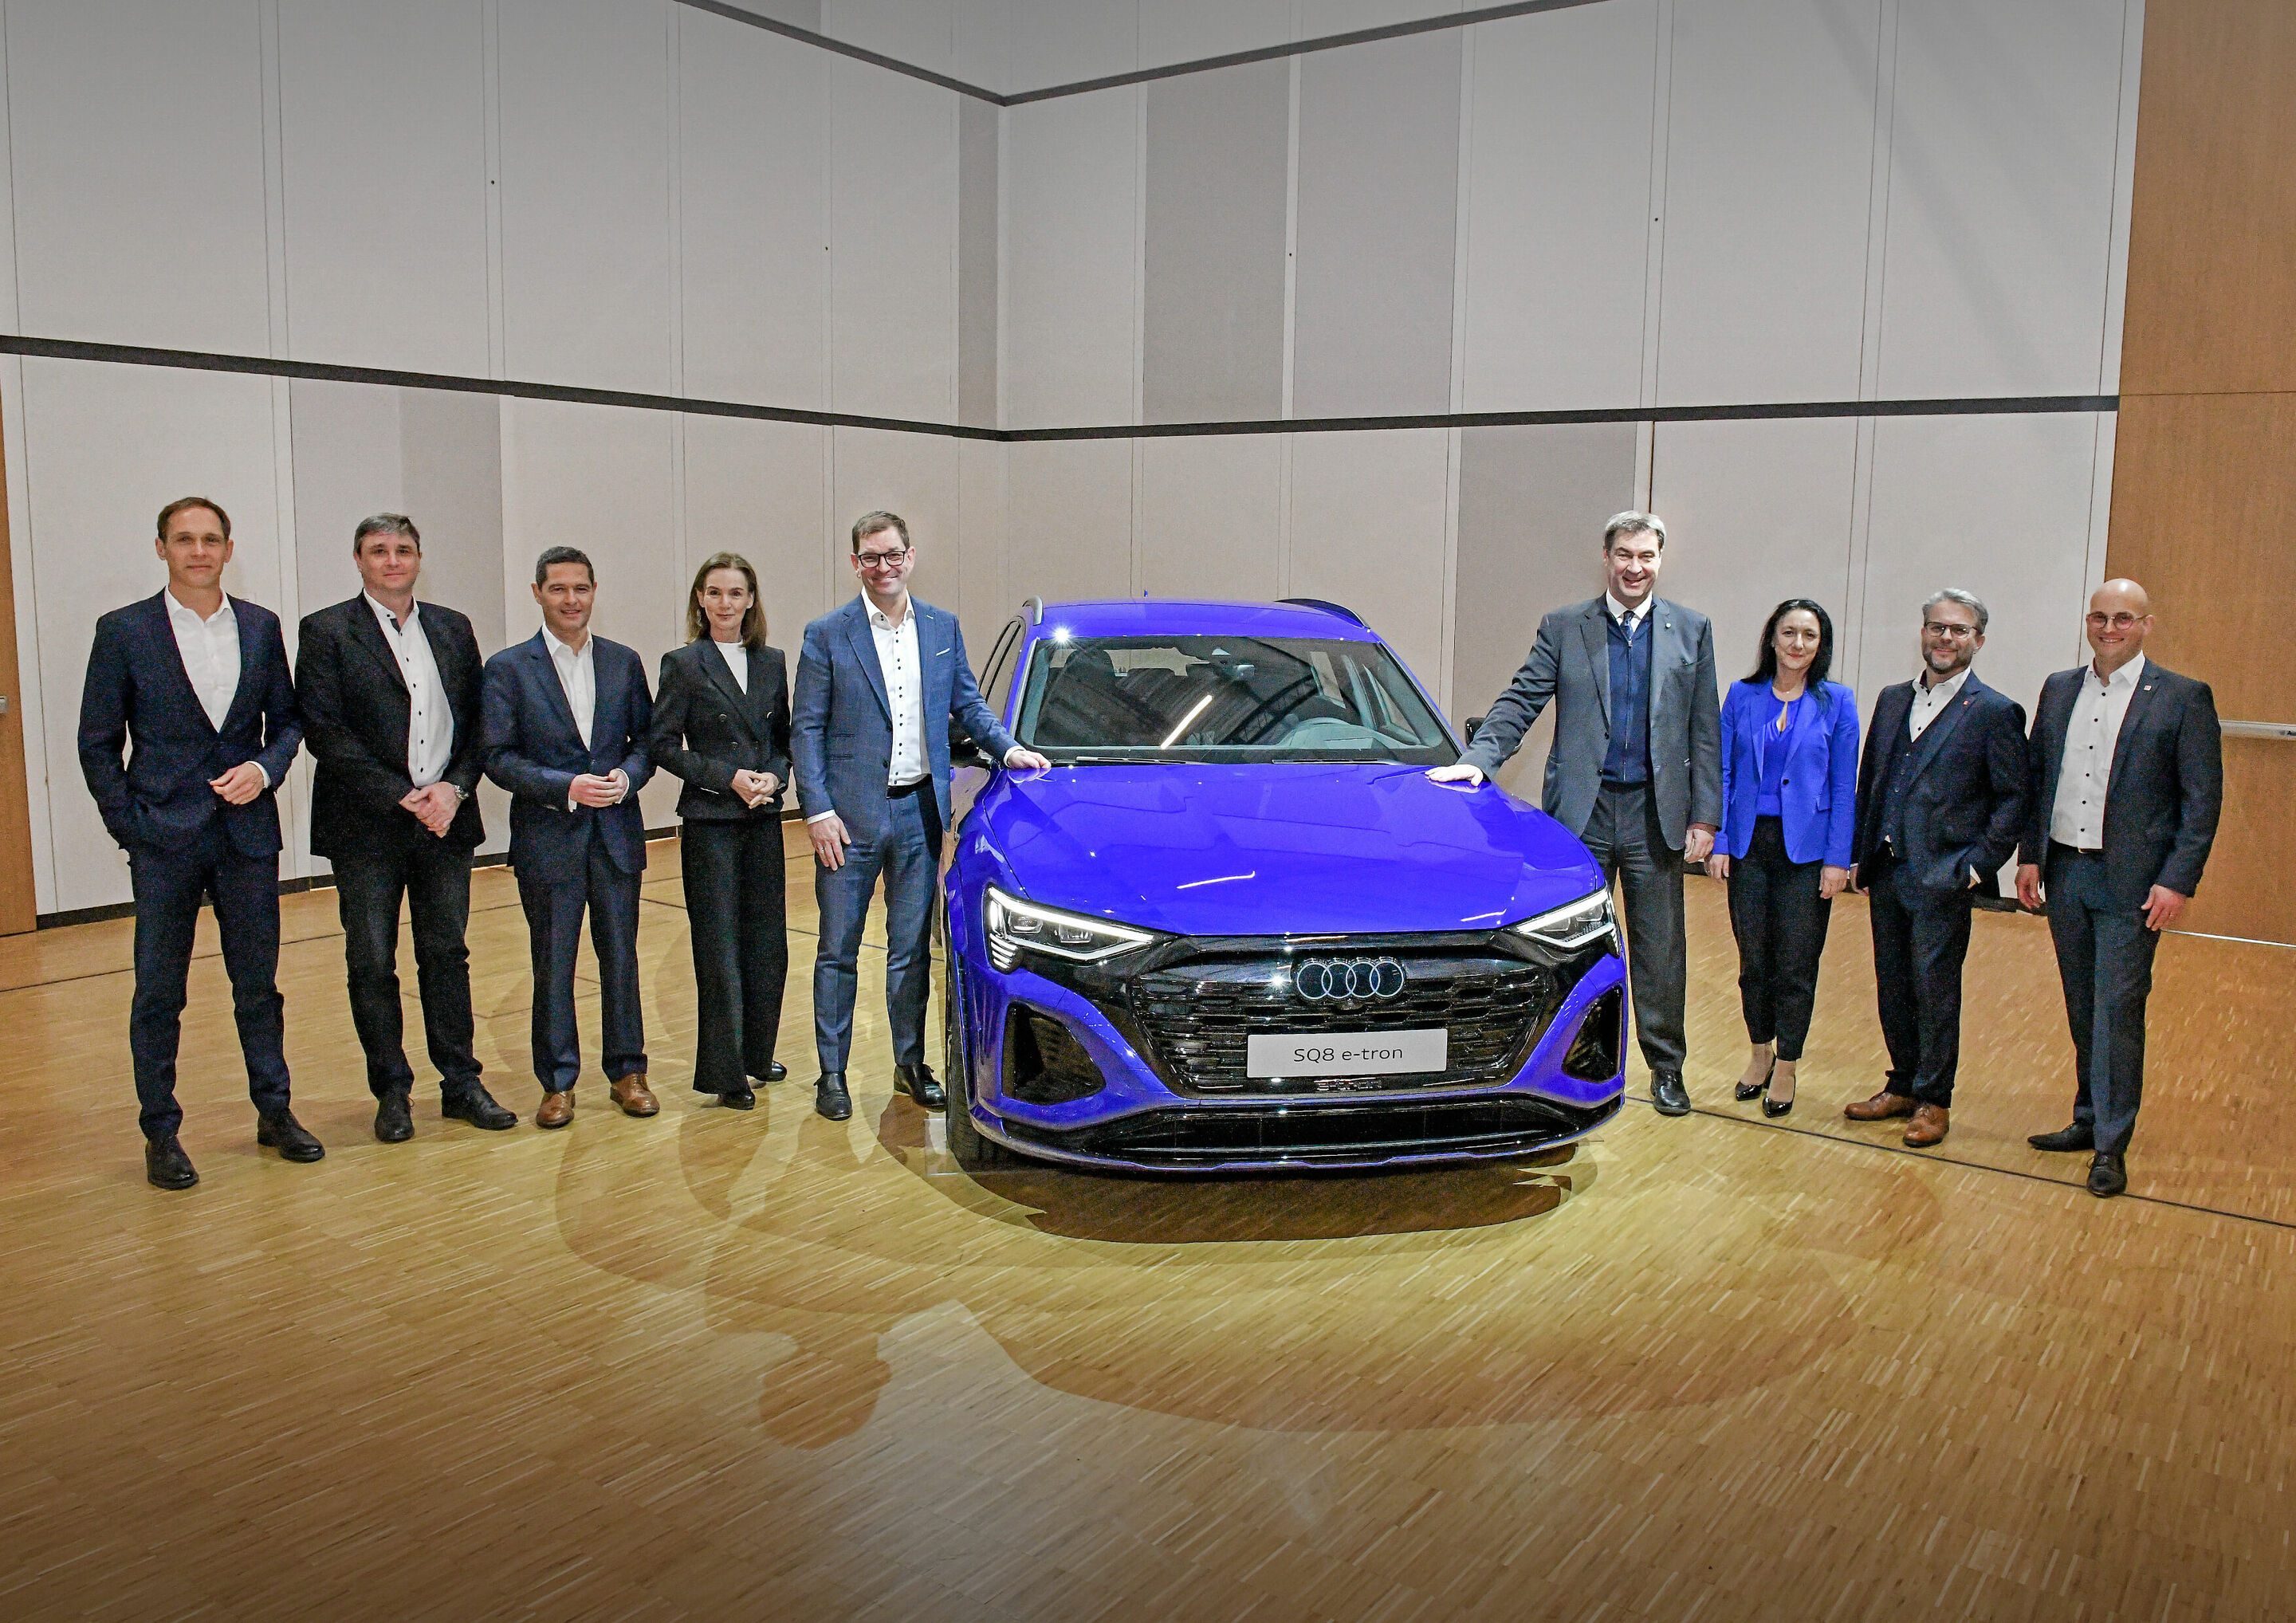 Betriebsversammlung Ingolstadt: „Wir stellen die Fragen zur Zukunft bei Audi“